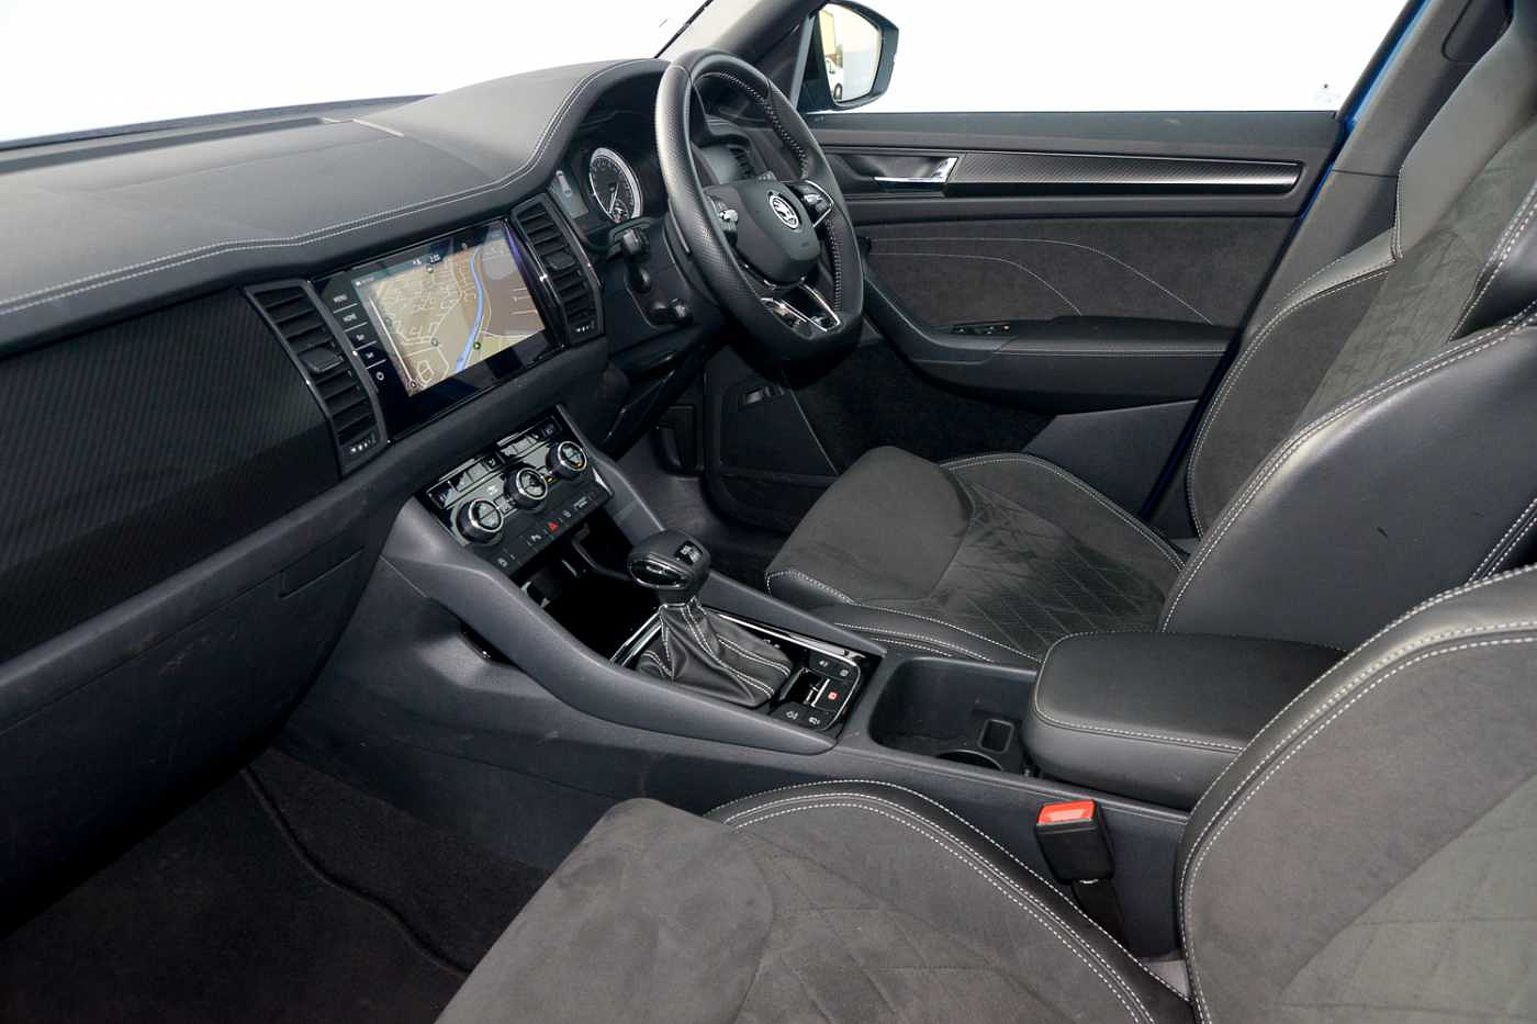 SKODA Kodiaq 2.0 TSI 190ps 4X4 Sportline 7 seats DSG SUV